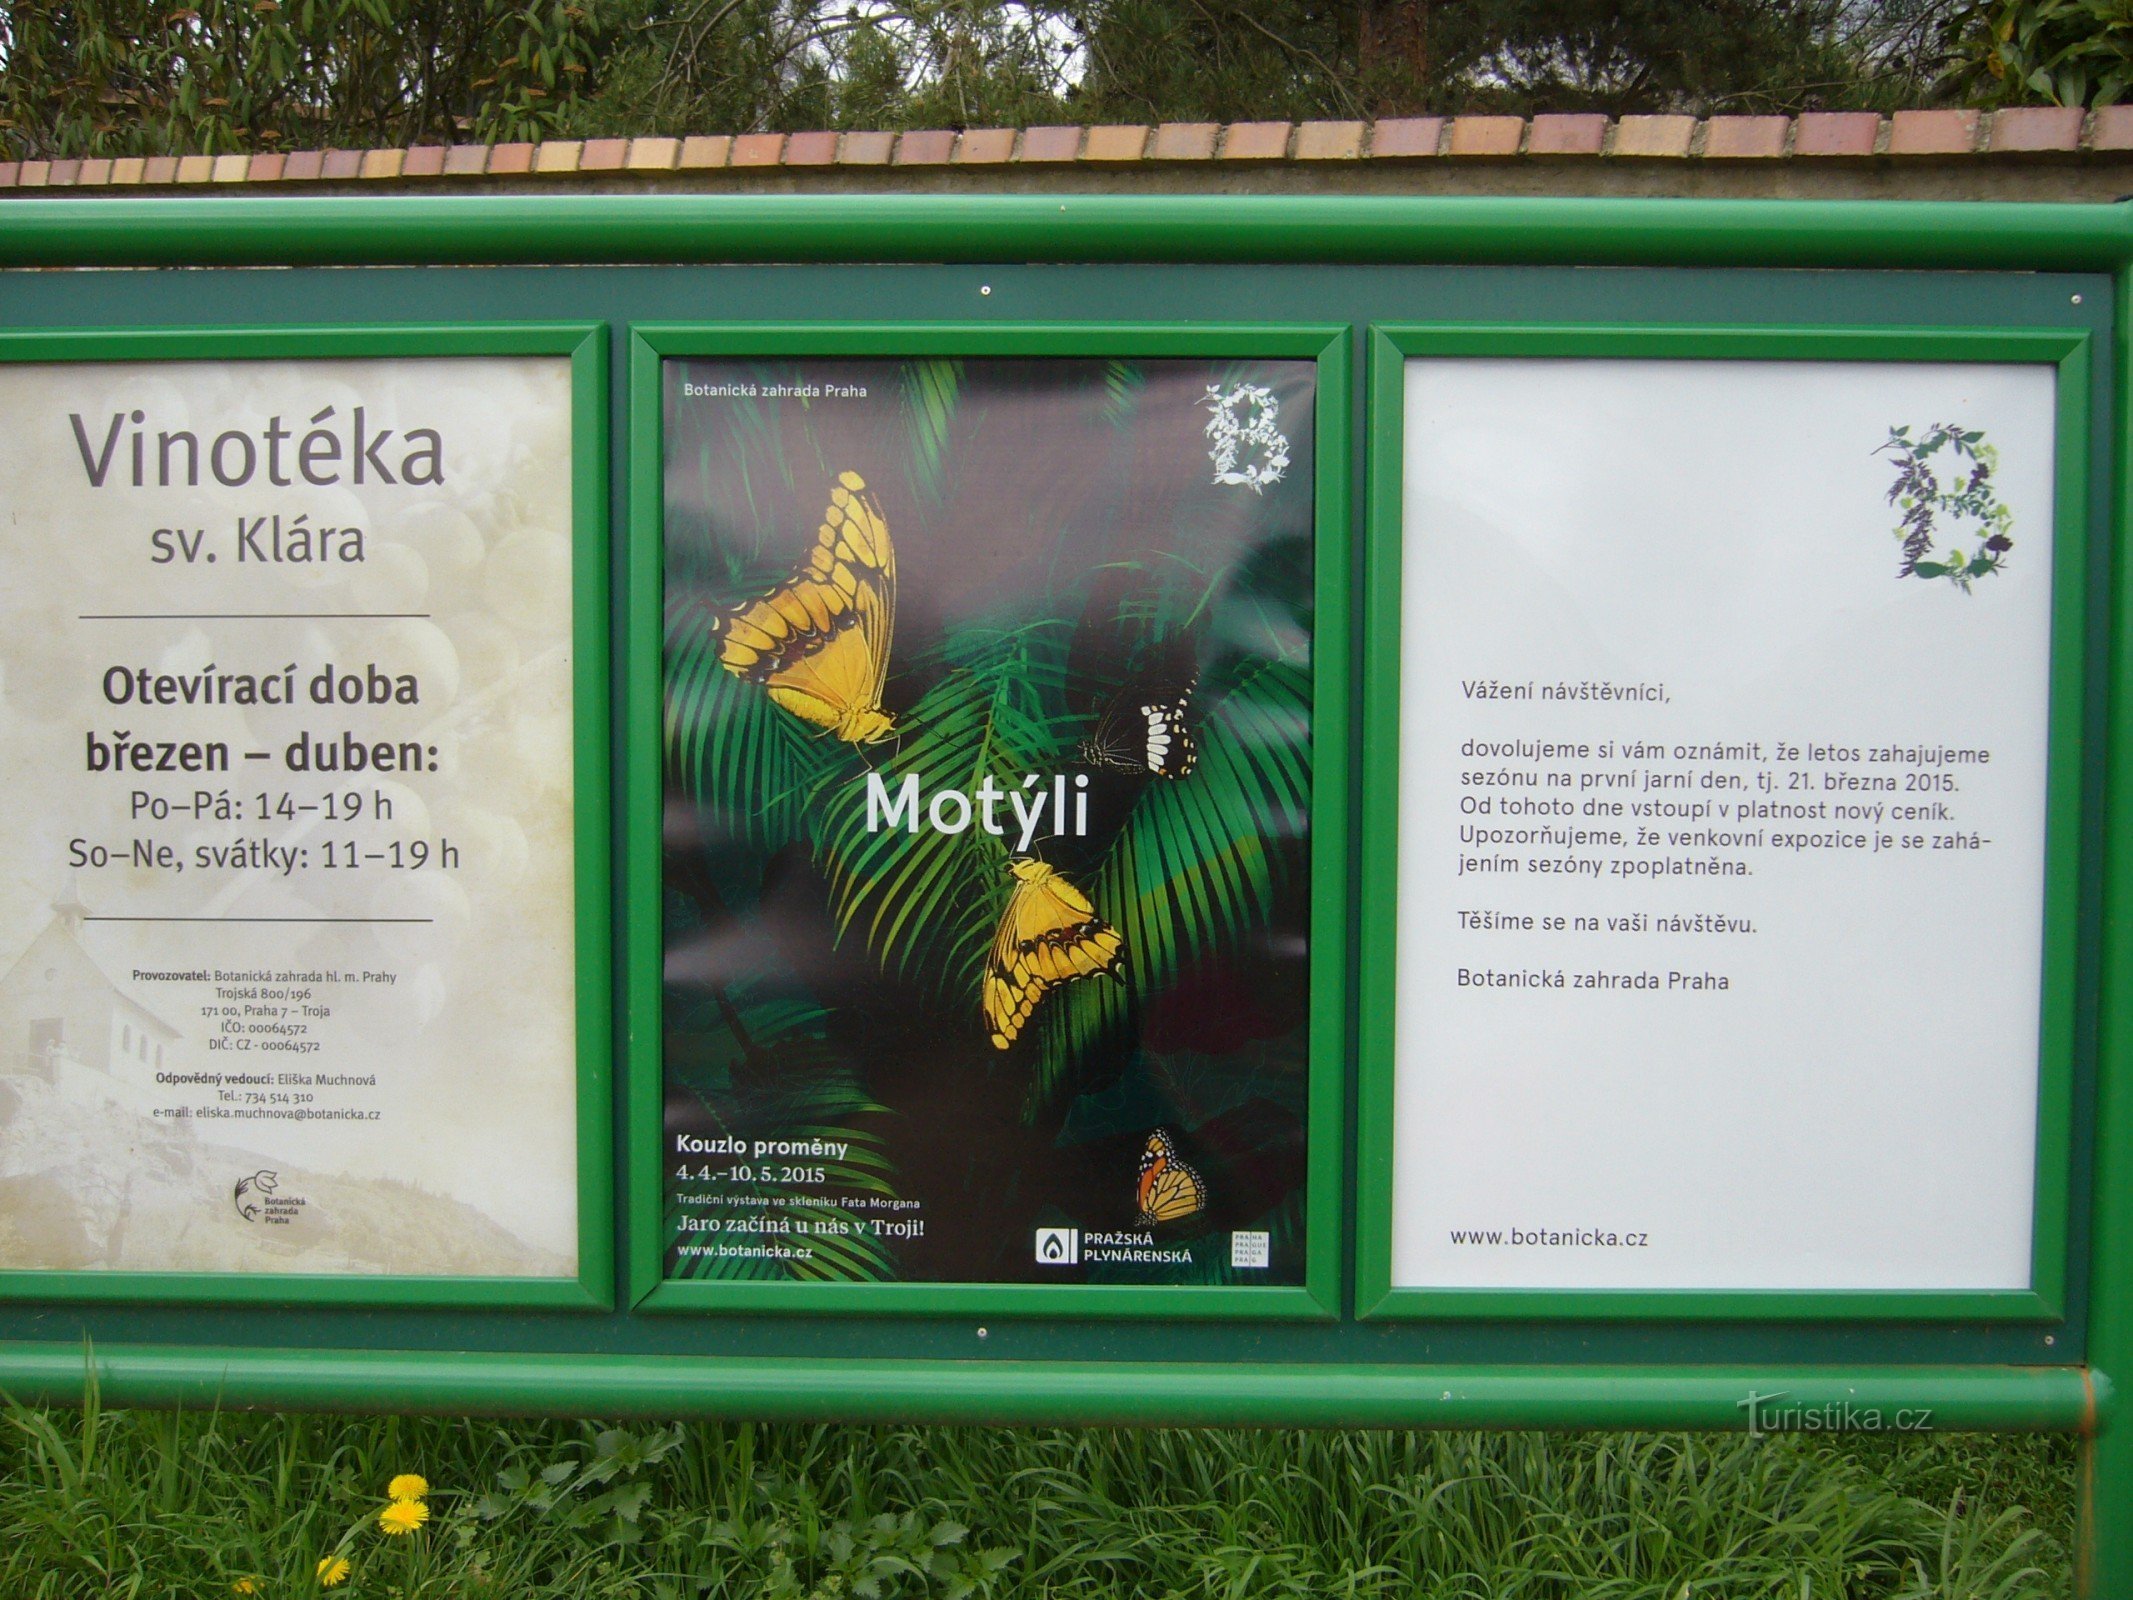 Prags botaniska trädgård